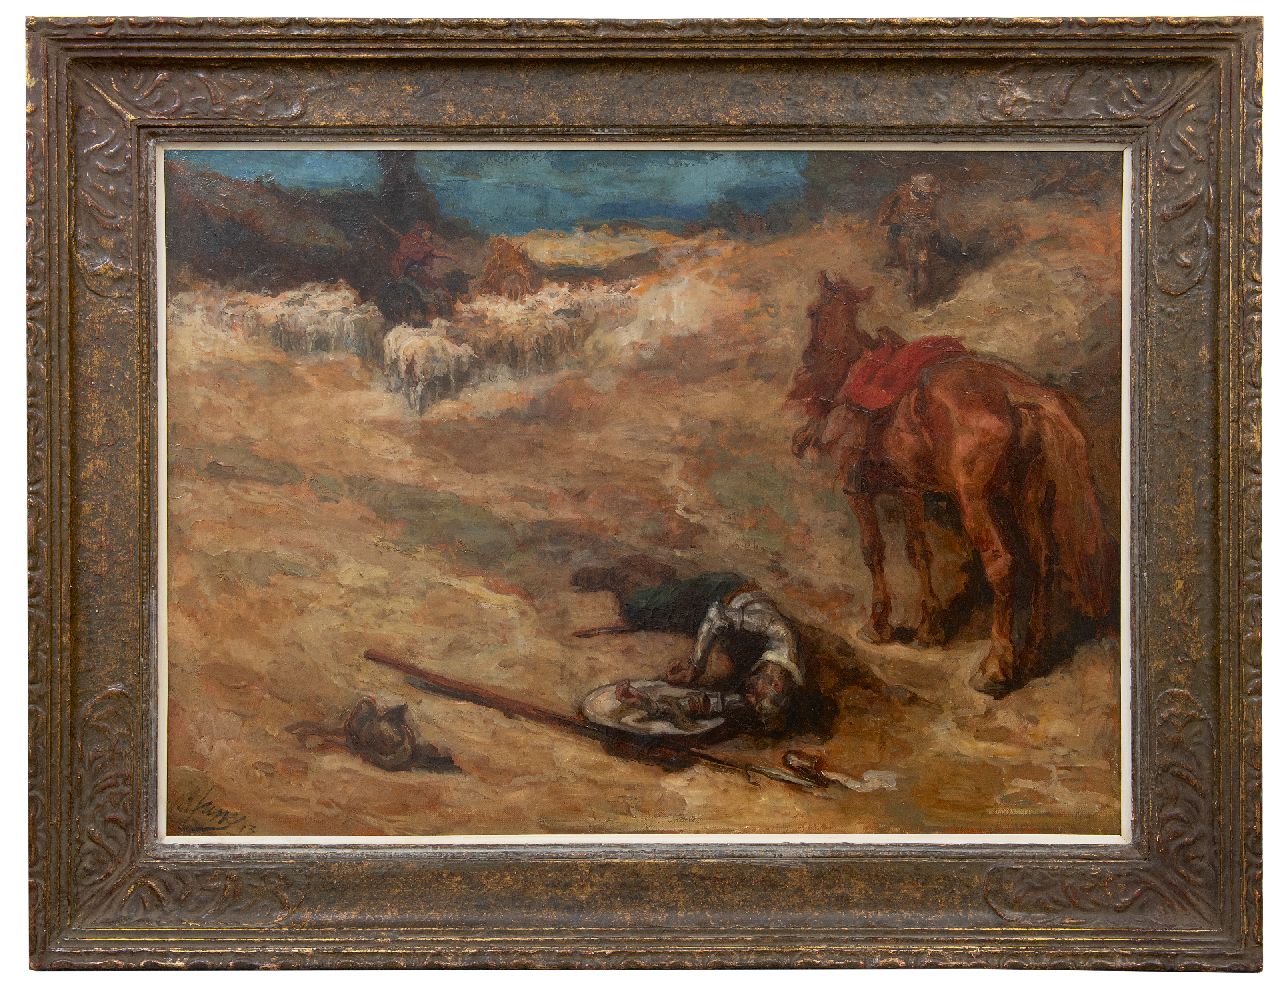 Jurres J.H.  | Johannes Hendricus Jurres, Scène uit Don Quichot, olieverf op doek 73,9 x 101,8 cm, gesigneerd linksonder en gedateerd '13